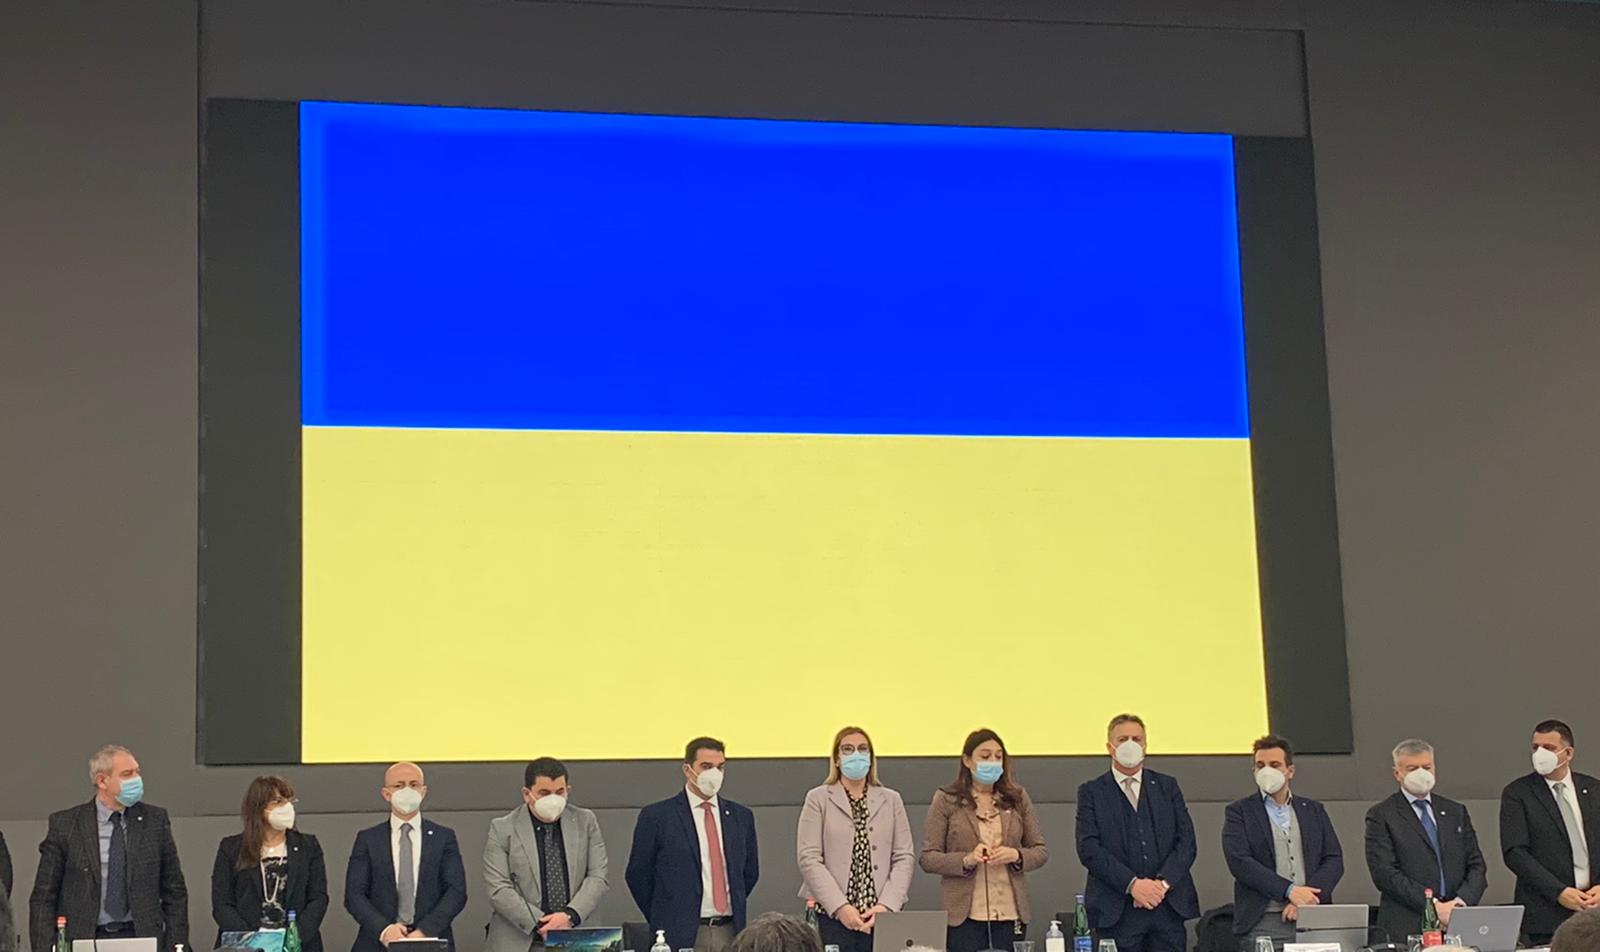 Membri Fnopi con bandiera Ucraina